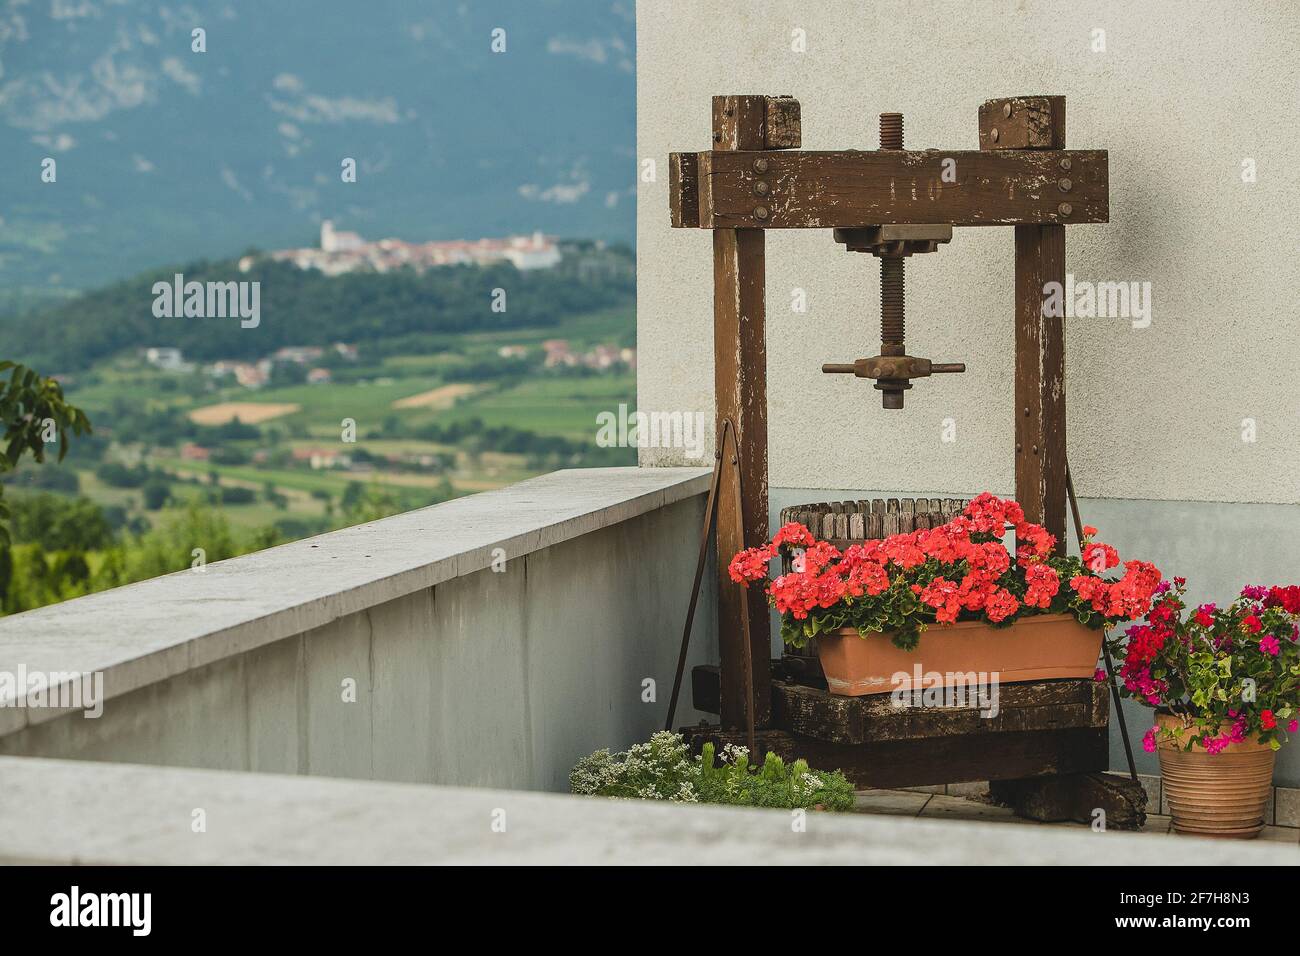 Une vieille presse à raisin pour faire du vin est debout sur un balcon avec une belle vue sur un vieux village sur la colline en arrière-plan. Banque D'Images